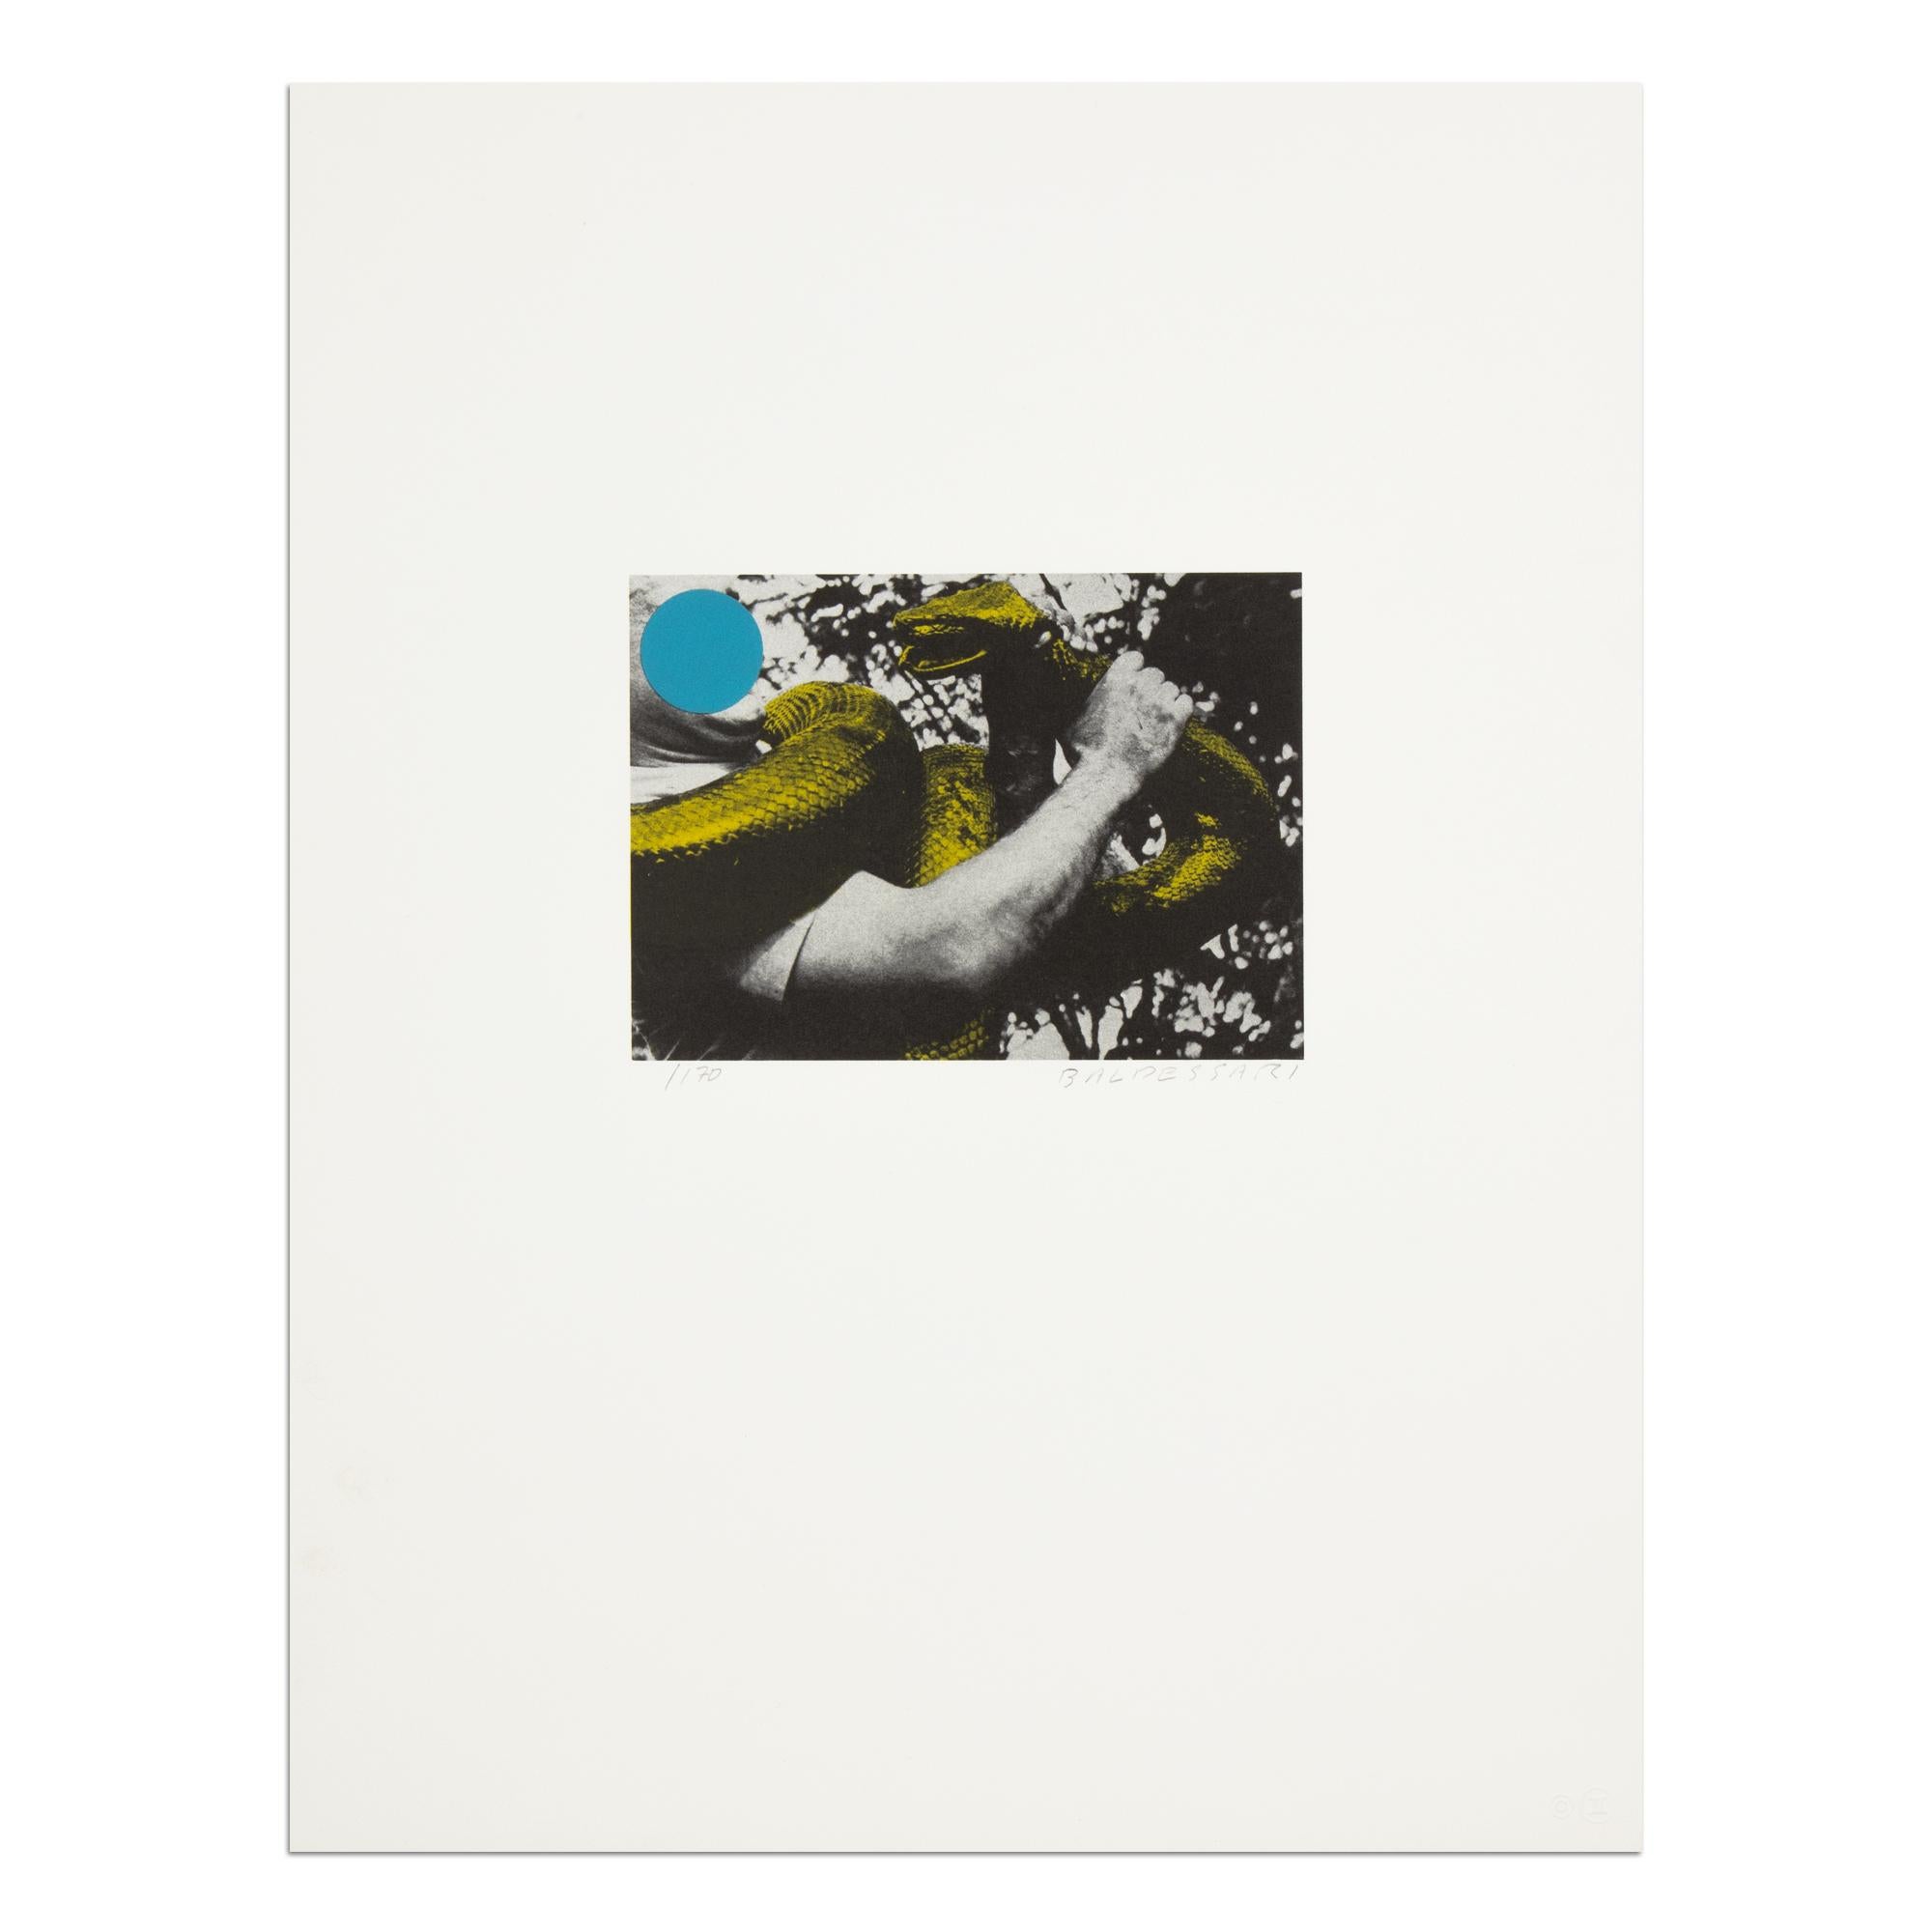 John Baldessari (Américain, 1931-2020)
Homme avec un serpent (bleu et jaune), 1990
Médium : Lithographie en couleurs, sur papier vélin
Dimensions : 45,7 x 35,5 cm (18 x 14 in)
Edition de 170 exemplaires : Signé et numéroté à la main au